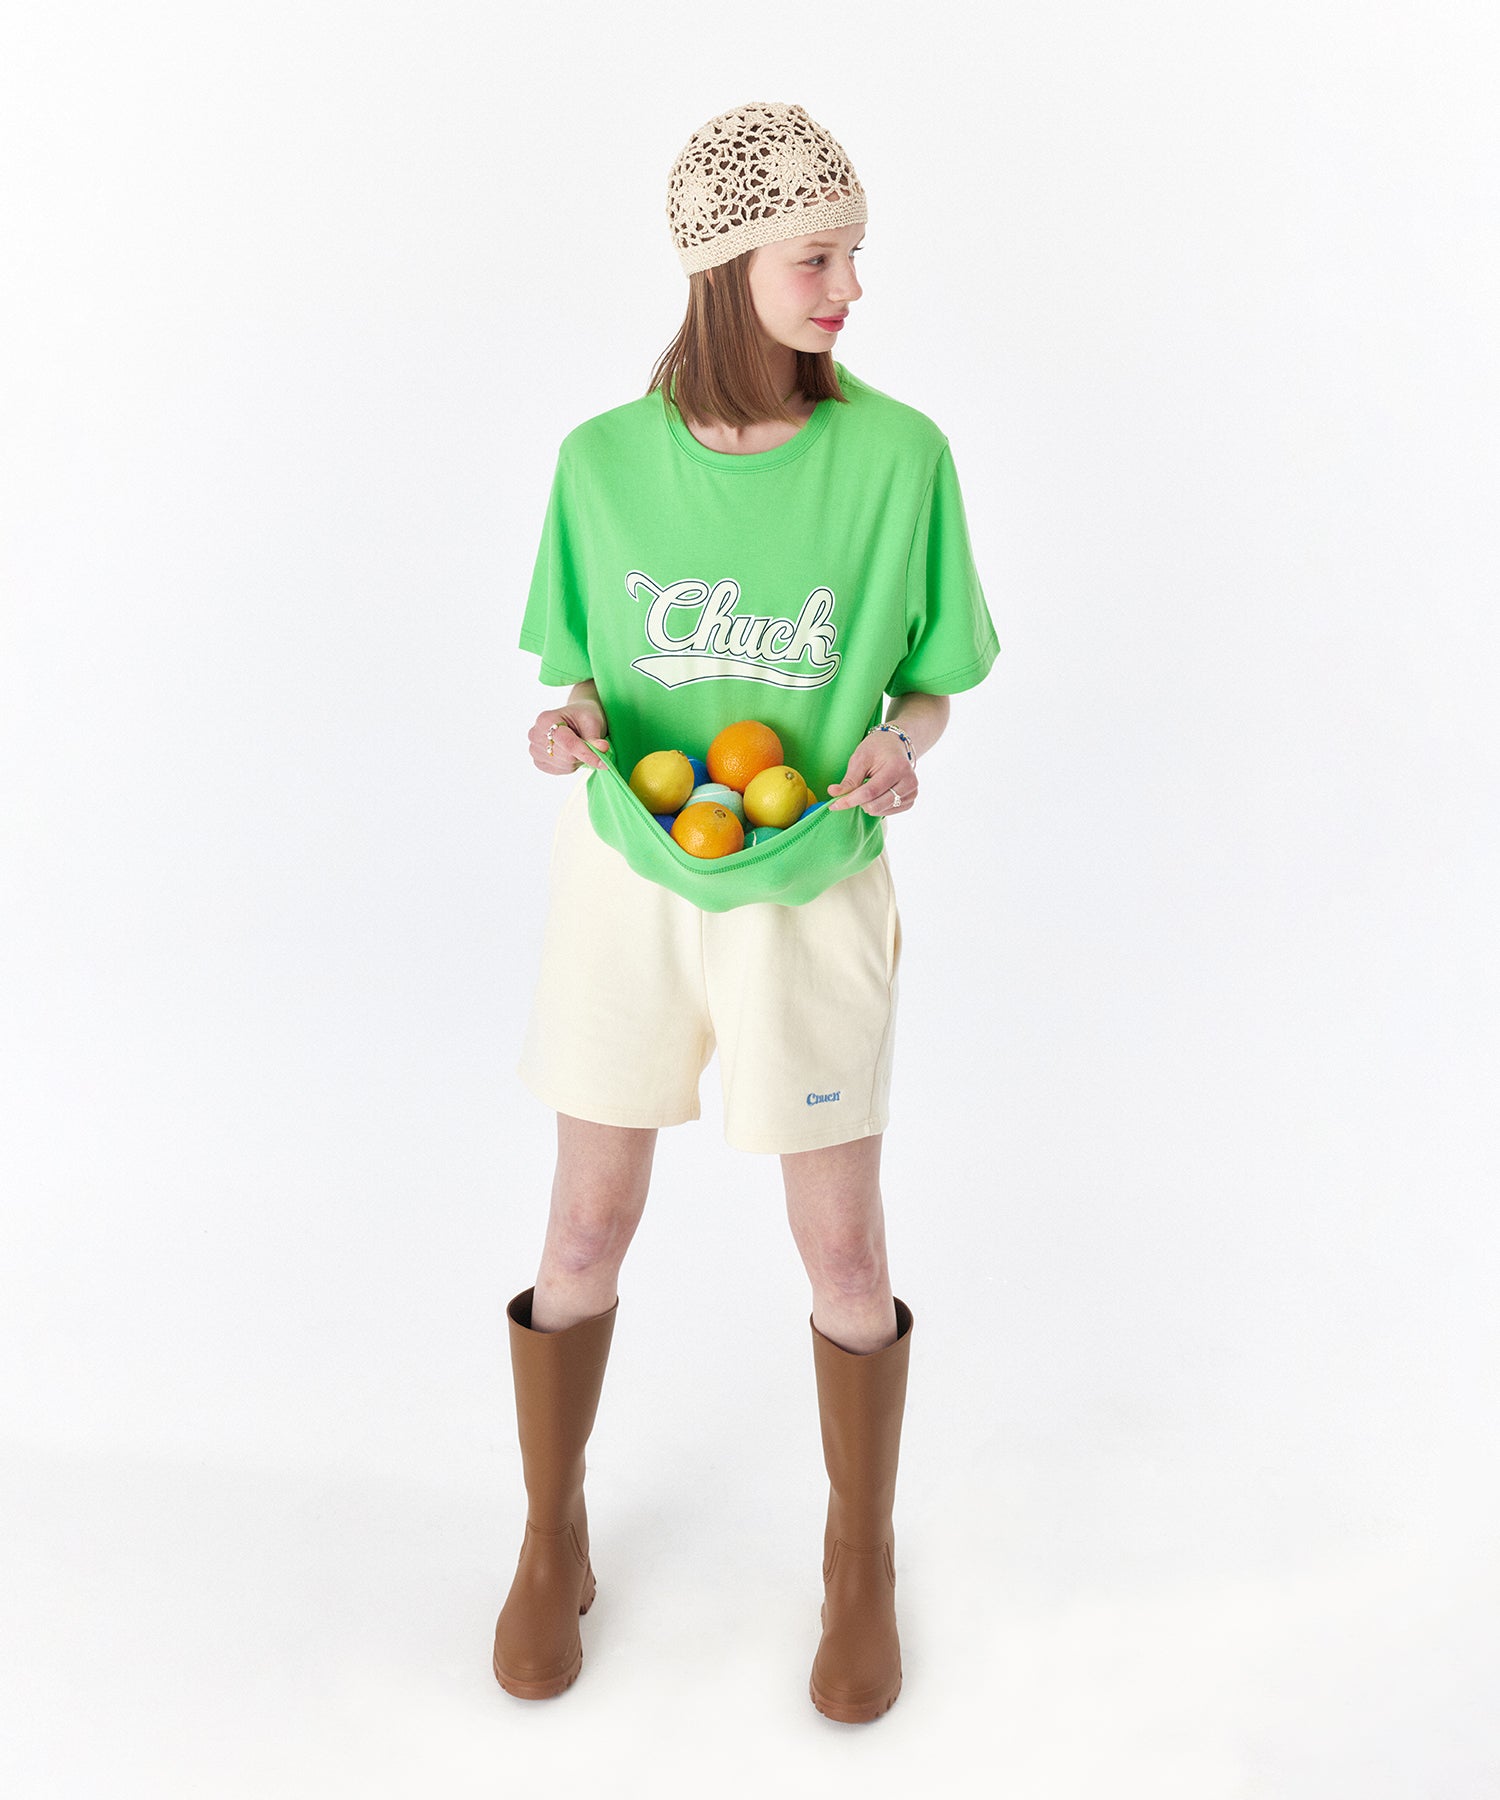 ベースボールロゴTシャツ / CHUCK BASEBALL LOGO T-SHIRT (LIGHT GREEN)